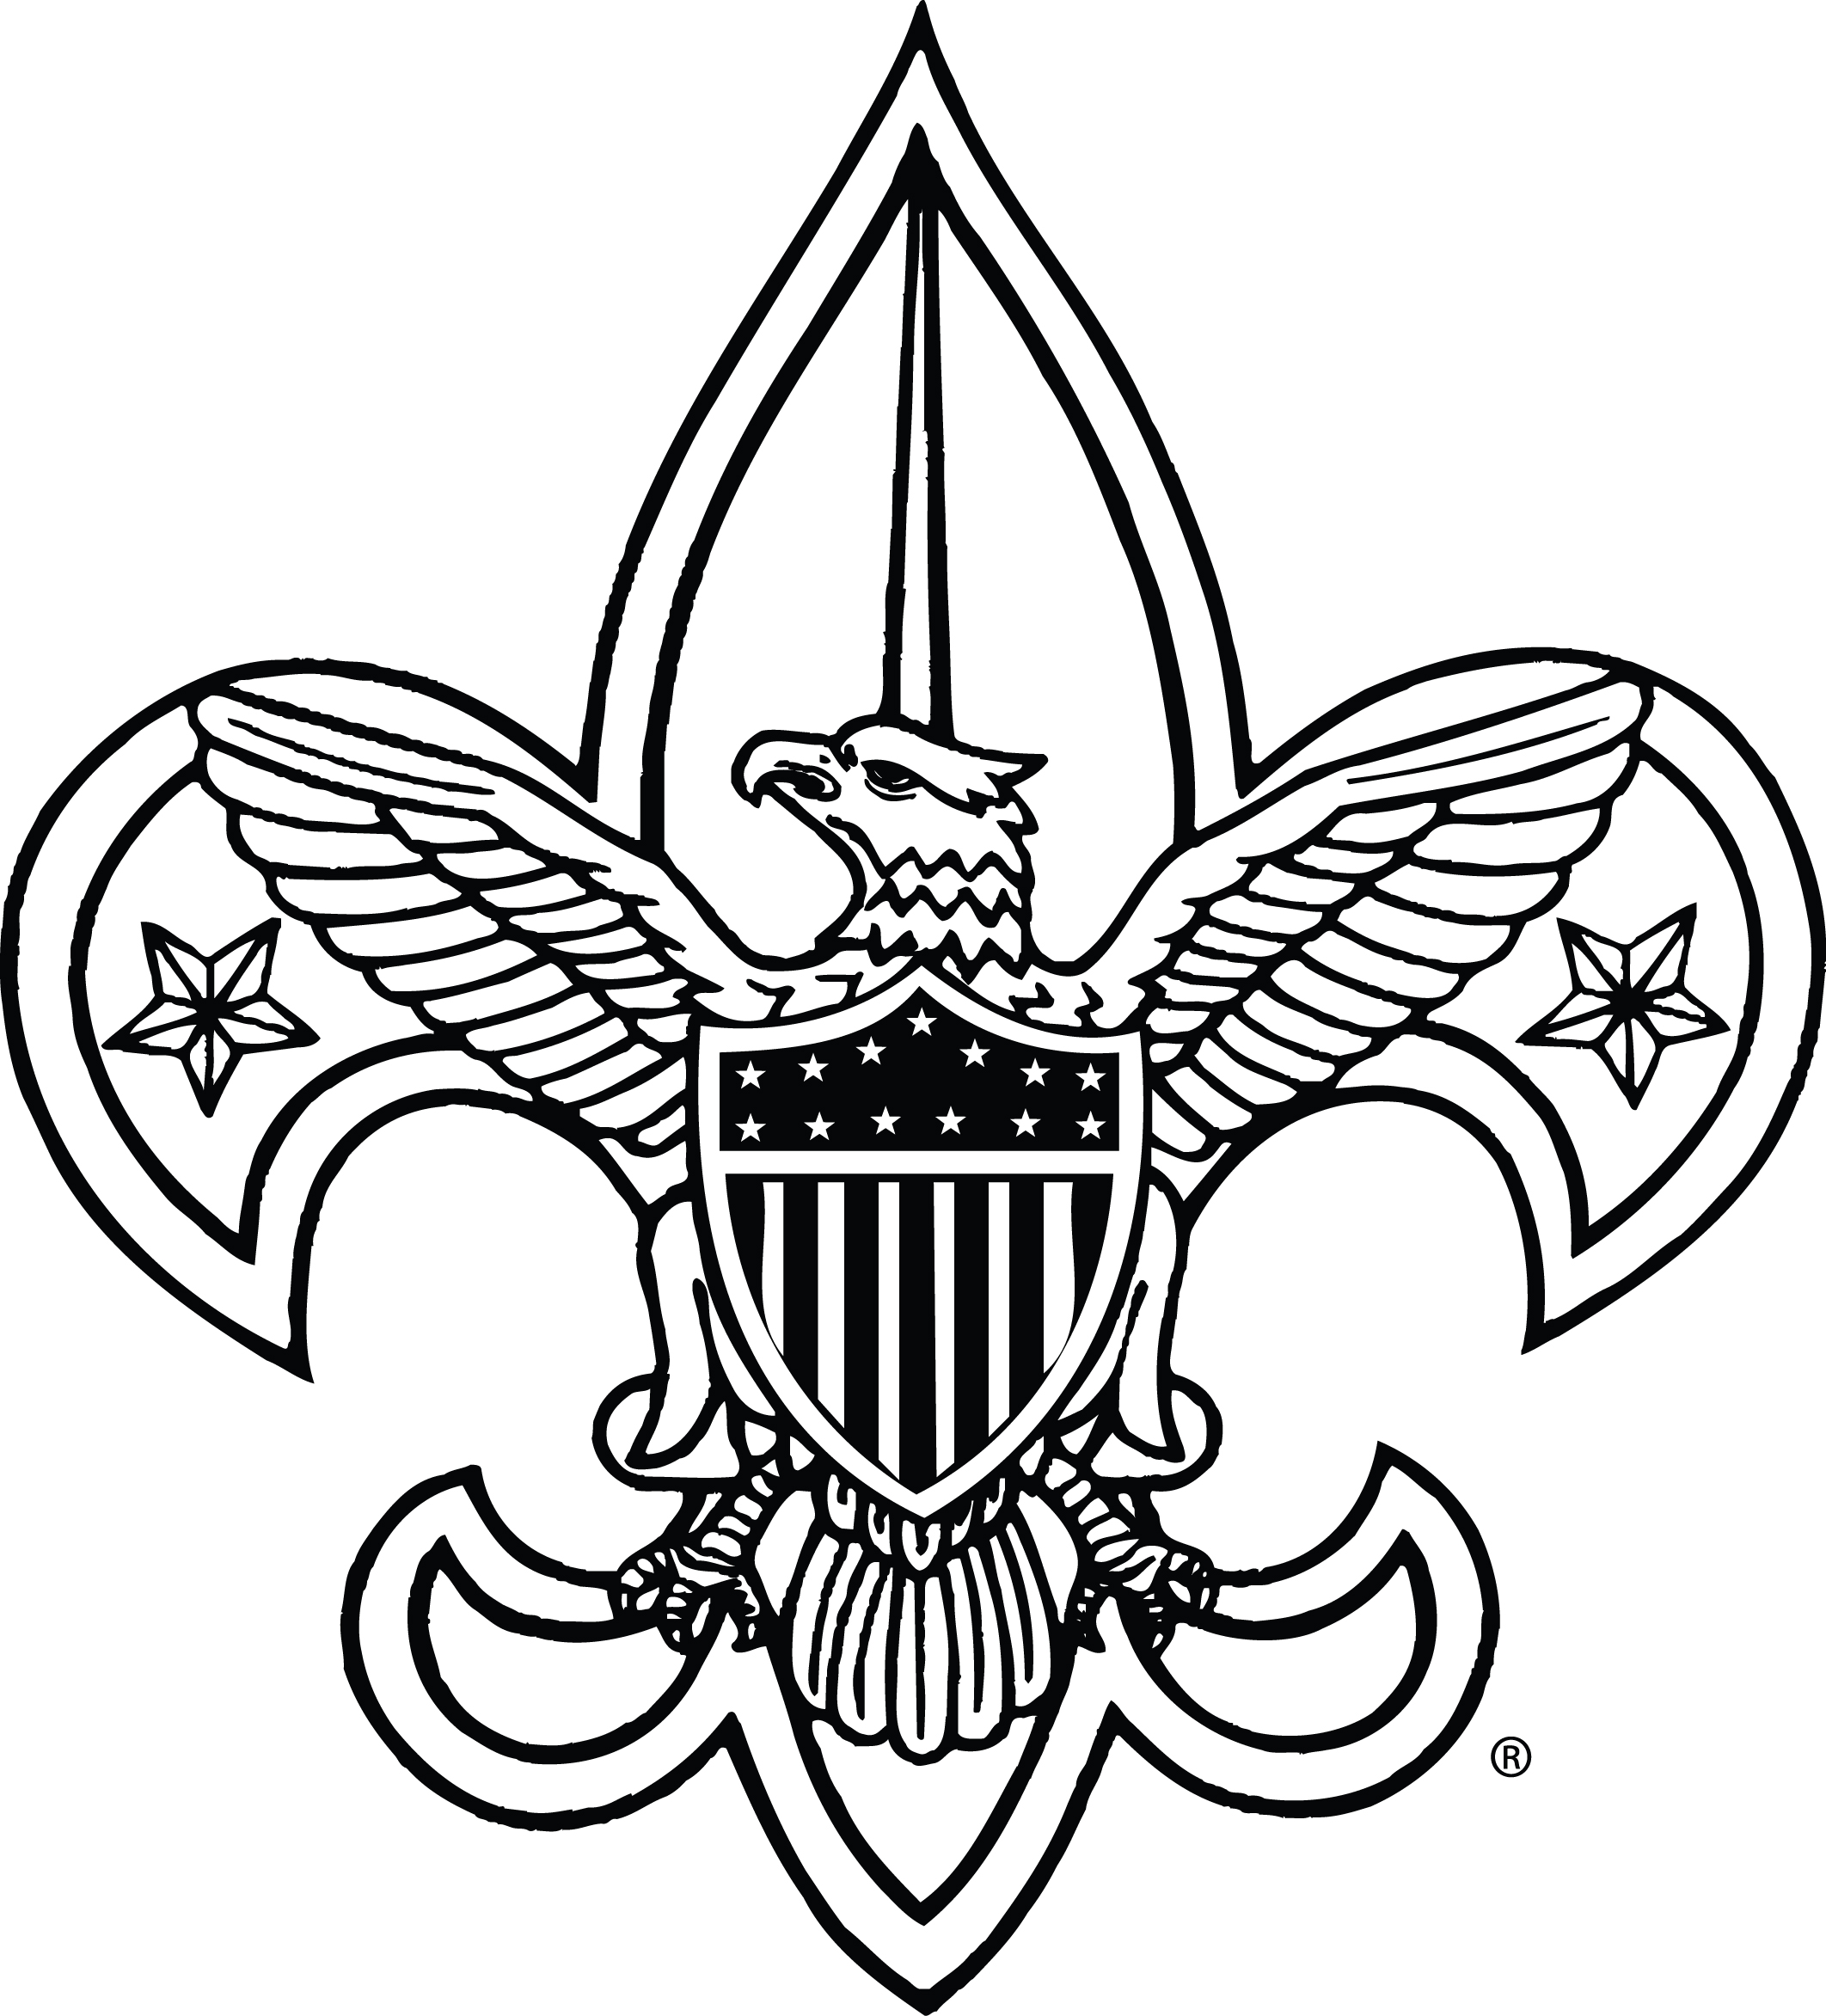 Boy scout logo clip art